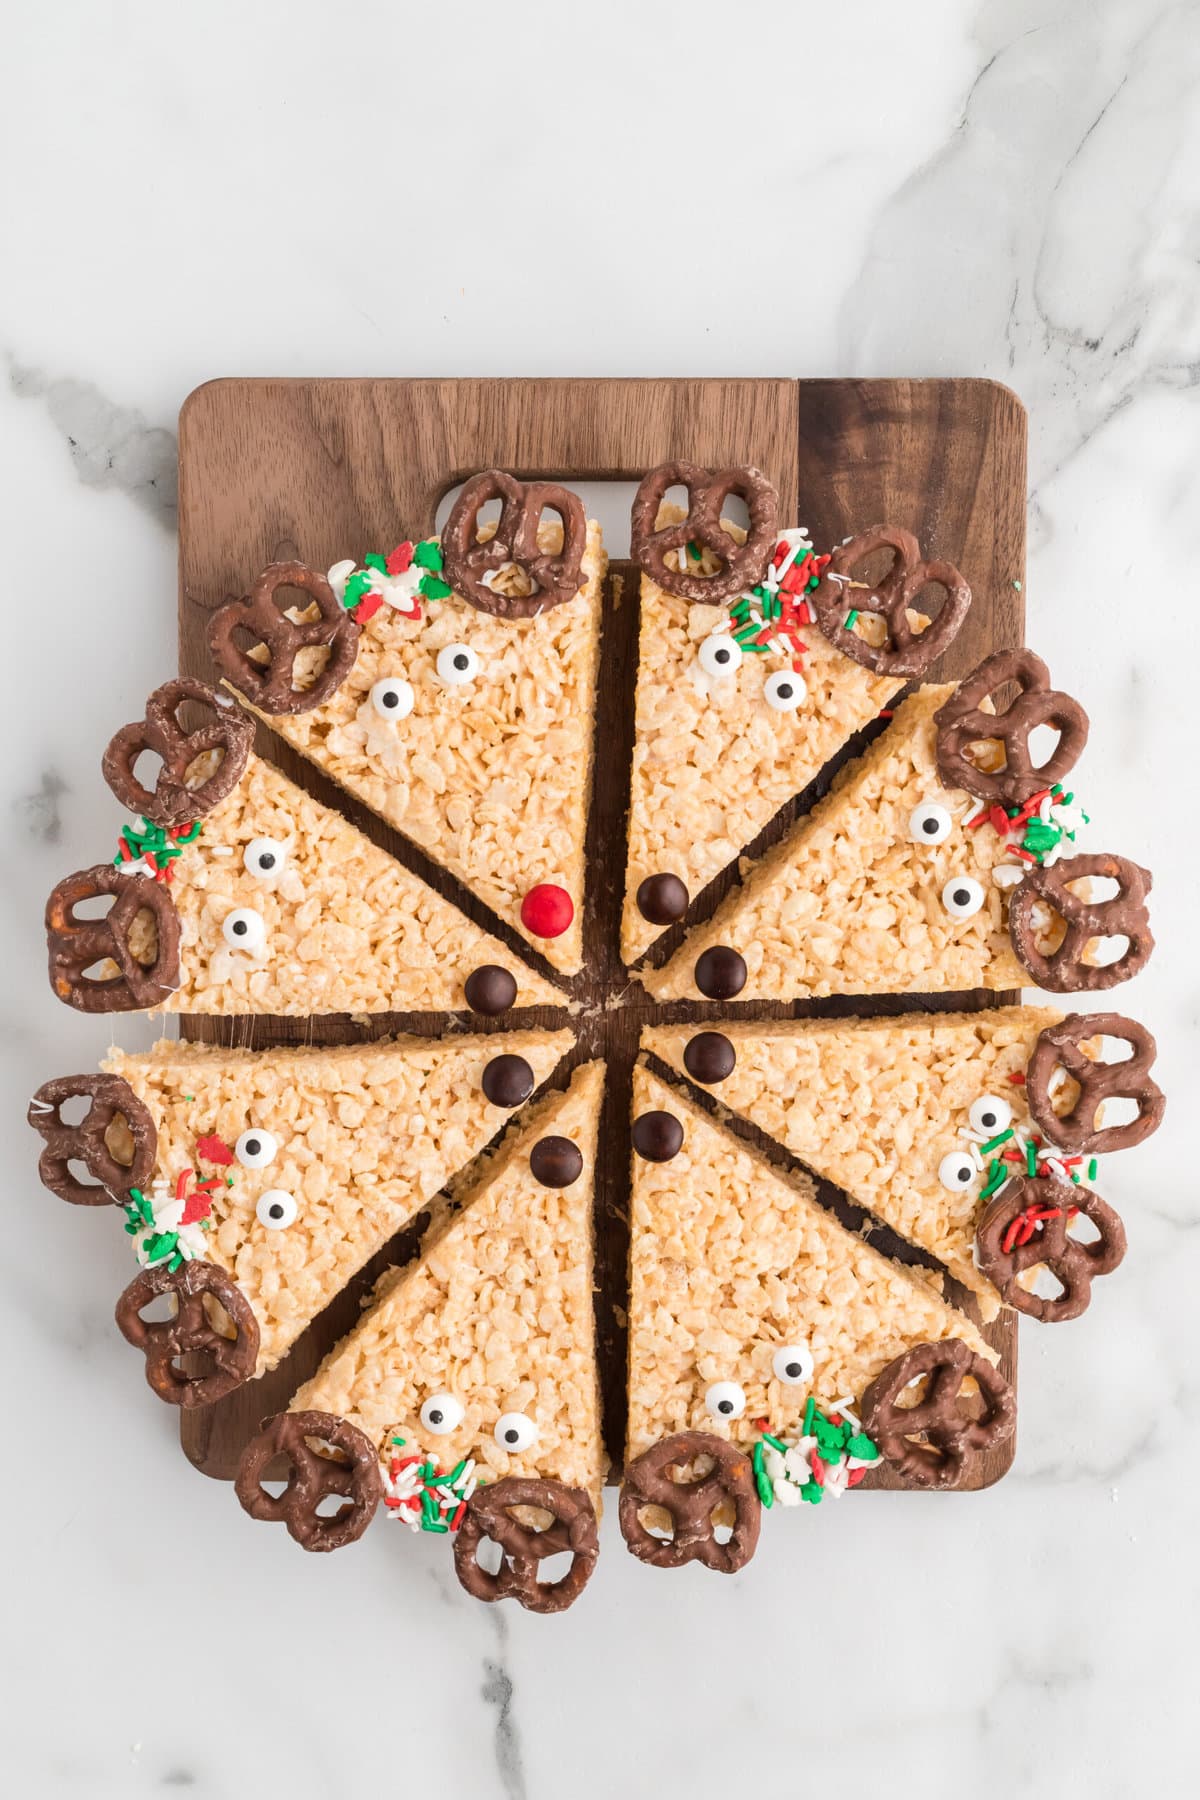 Reindeer Rice Krispie Treats on a wooden board.